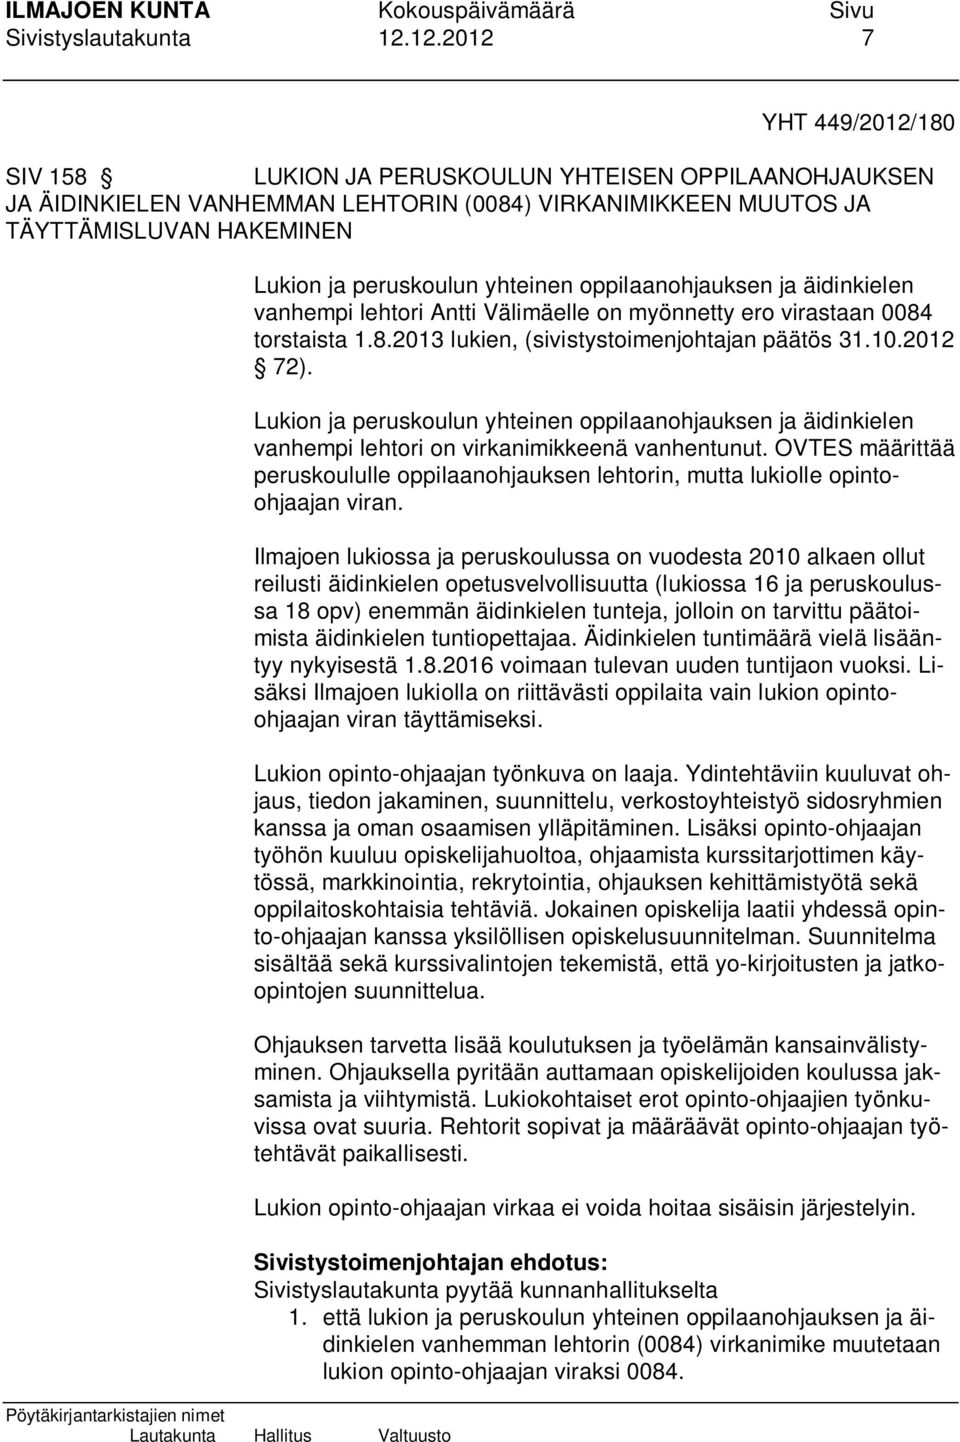 yhteinen oppilaanohjauksen ja äidinkielen vanhempi lehtori Antti Välimäelle on myönnetty ero virastaan 0084 torstaista 1.8.2013 lukien, (sivistystoimenjohtajan päätös 31.10.2012 72).